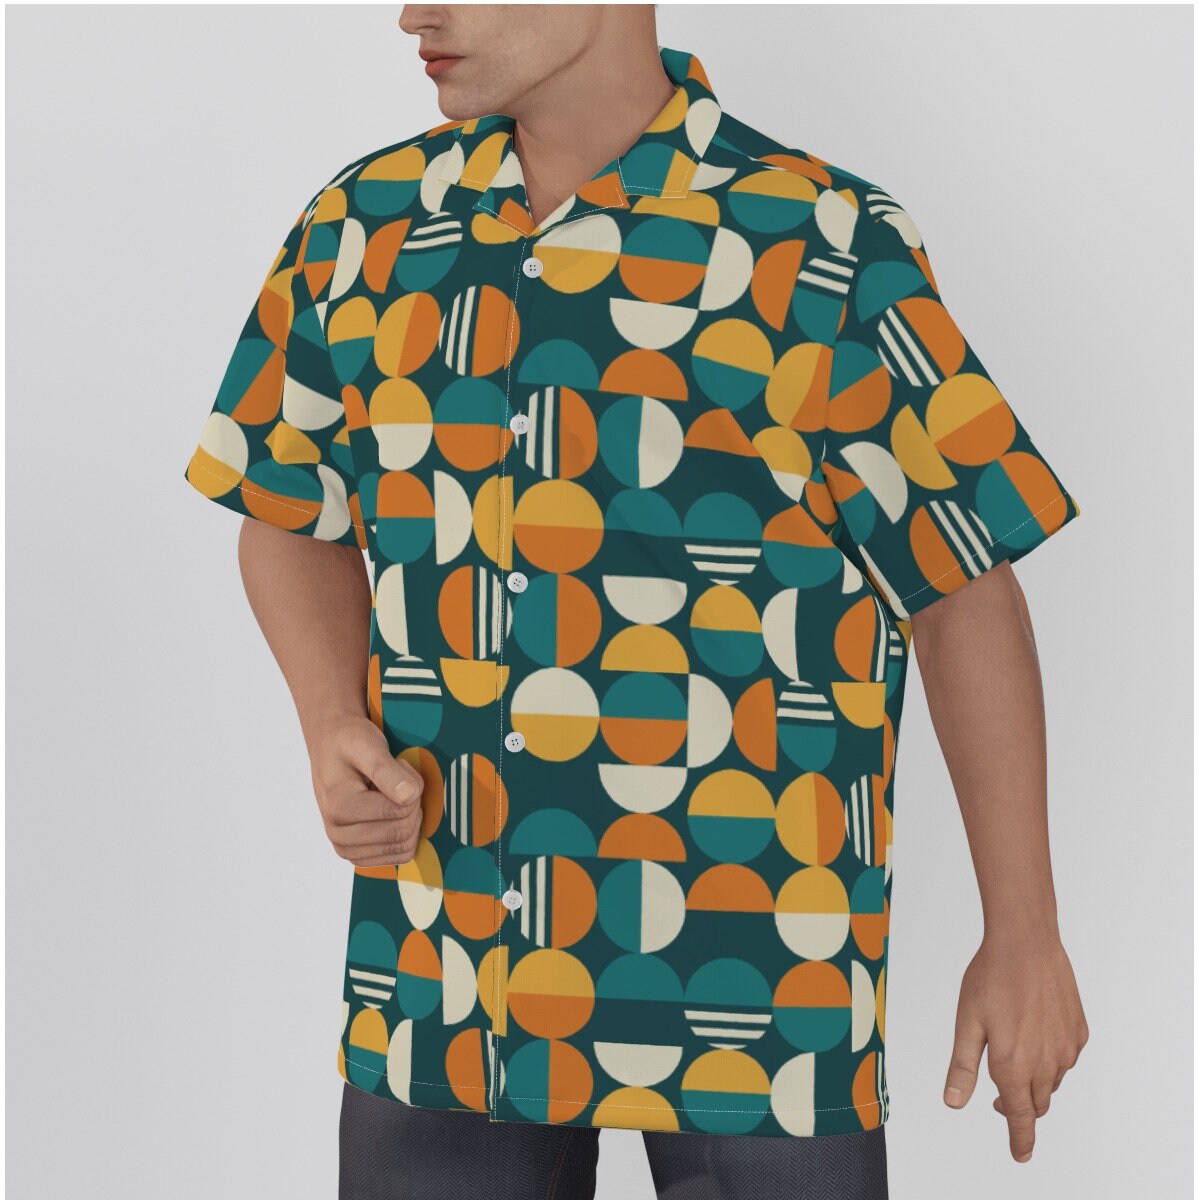 Chemise rétro hommes, haut rétro, chemise mod, chemise géométrique, chemise sarcelle orange, haut de style vintage, chemise hawaïenne inspirée des années 60, chemise habillée